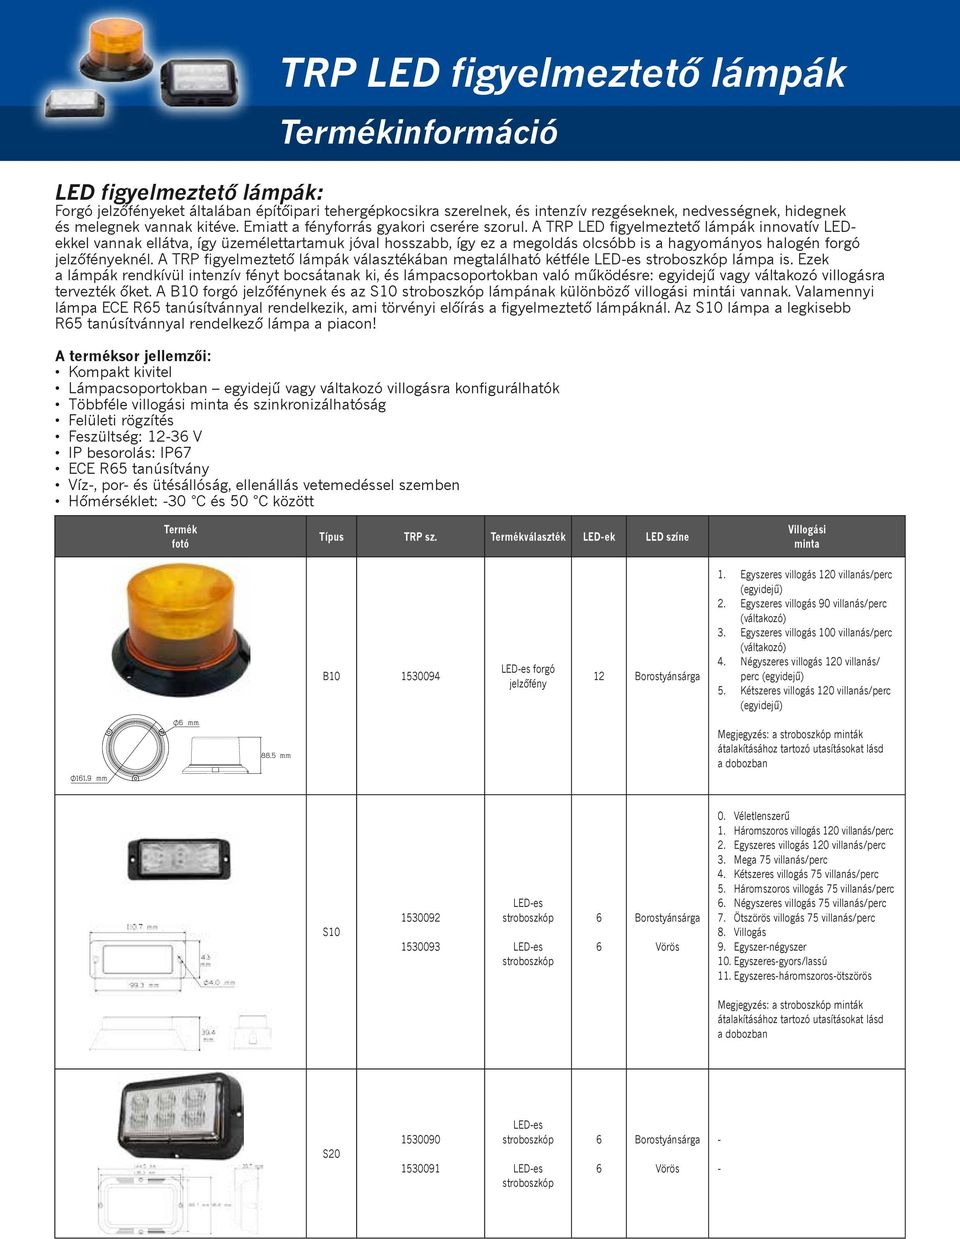 A TRP LED figyelmeztető lámpák innovatív LEDekkel vannak ellátva, így üzemélettartamuk jóval hosszabb, így ez a megoldás olcsóbb is a hagyományos halogén forgó jelzőfényeknél.